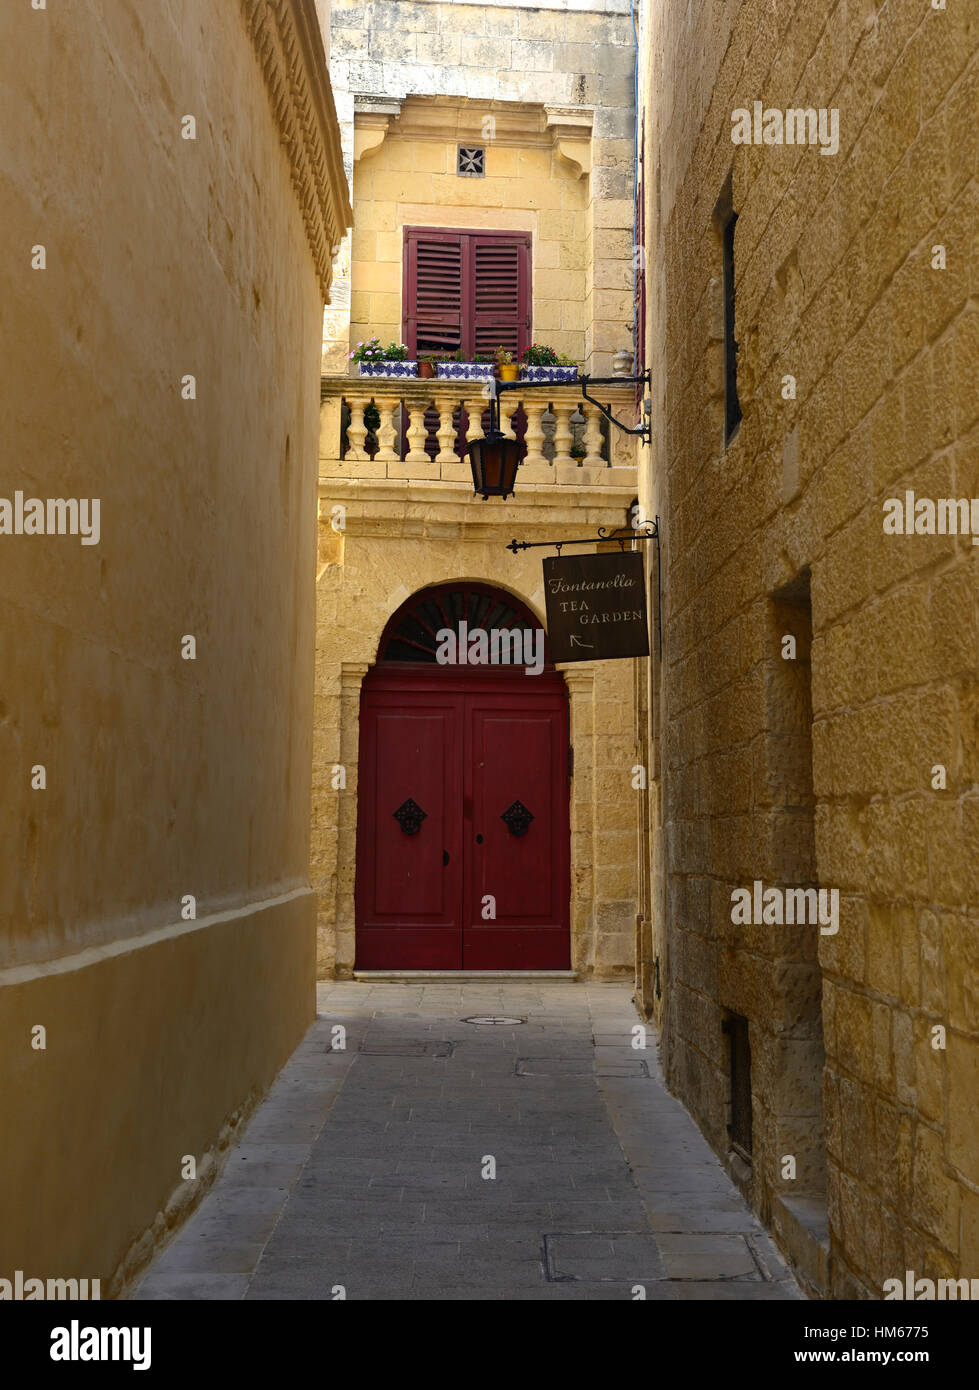 Zeichen führen führenden Fontanella Restaurant Café Mdina Malta alte Hauptstadt und die Stille Stadt Straße mediterranen Straßen Seite Stockfoto